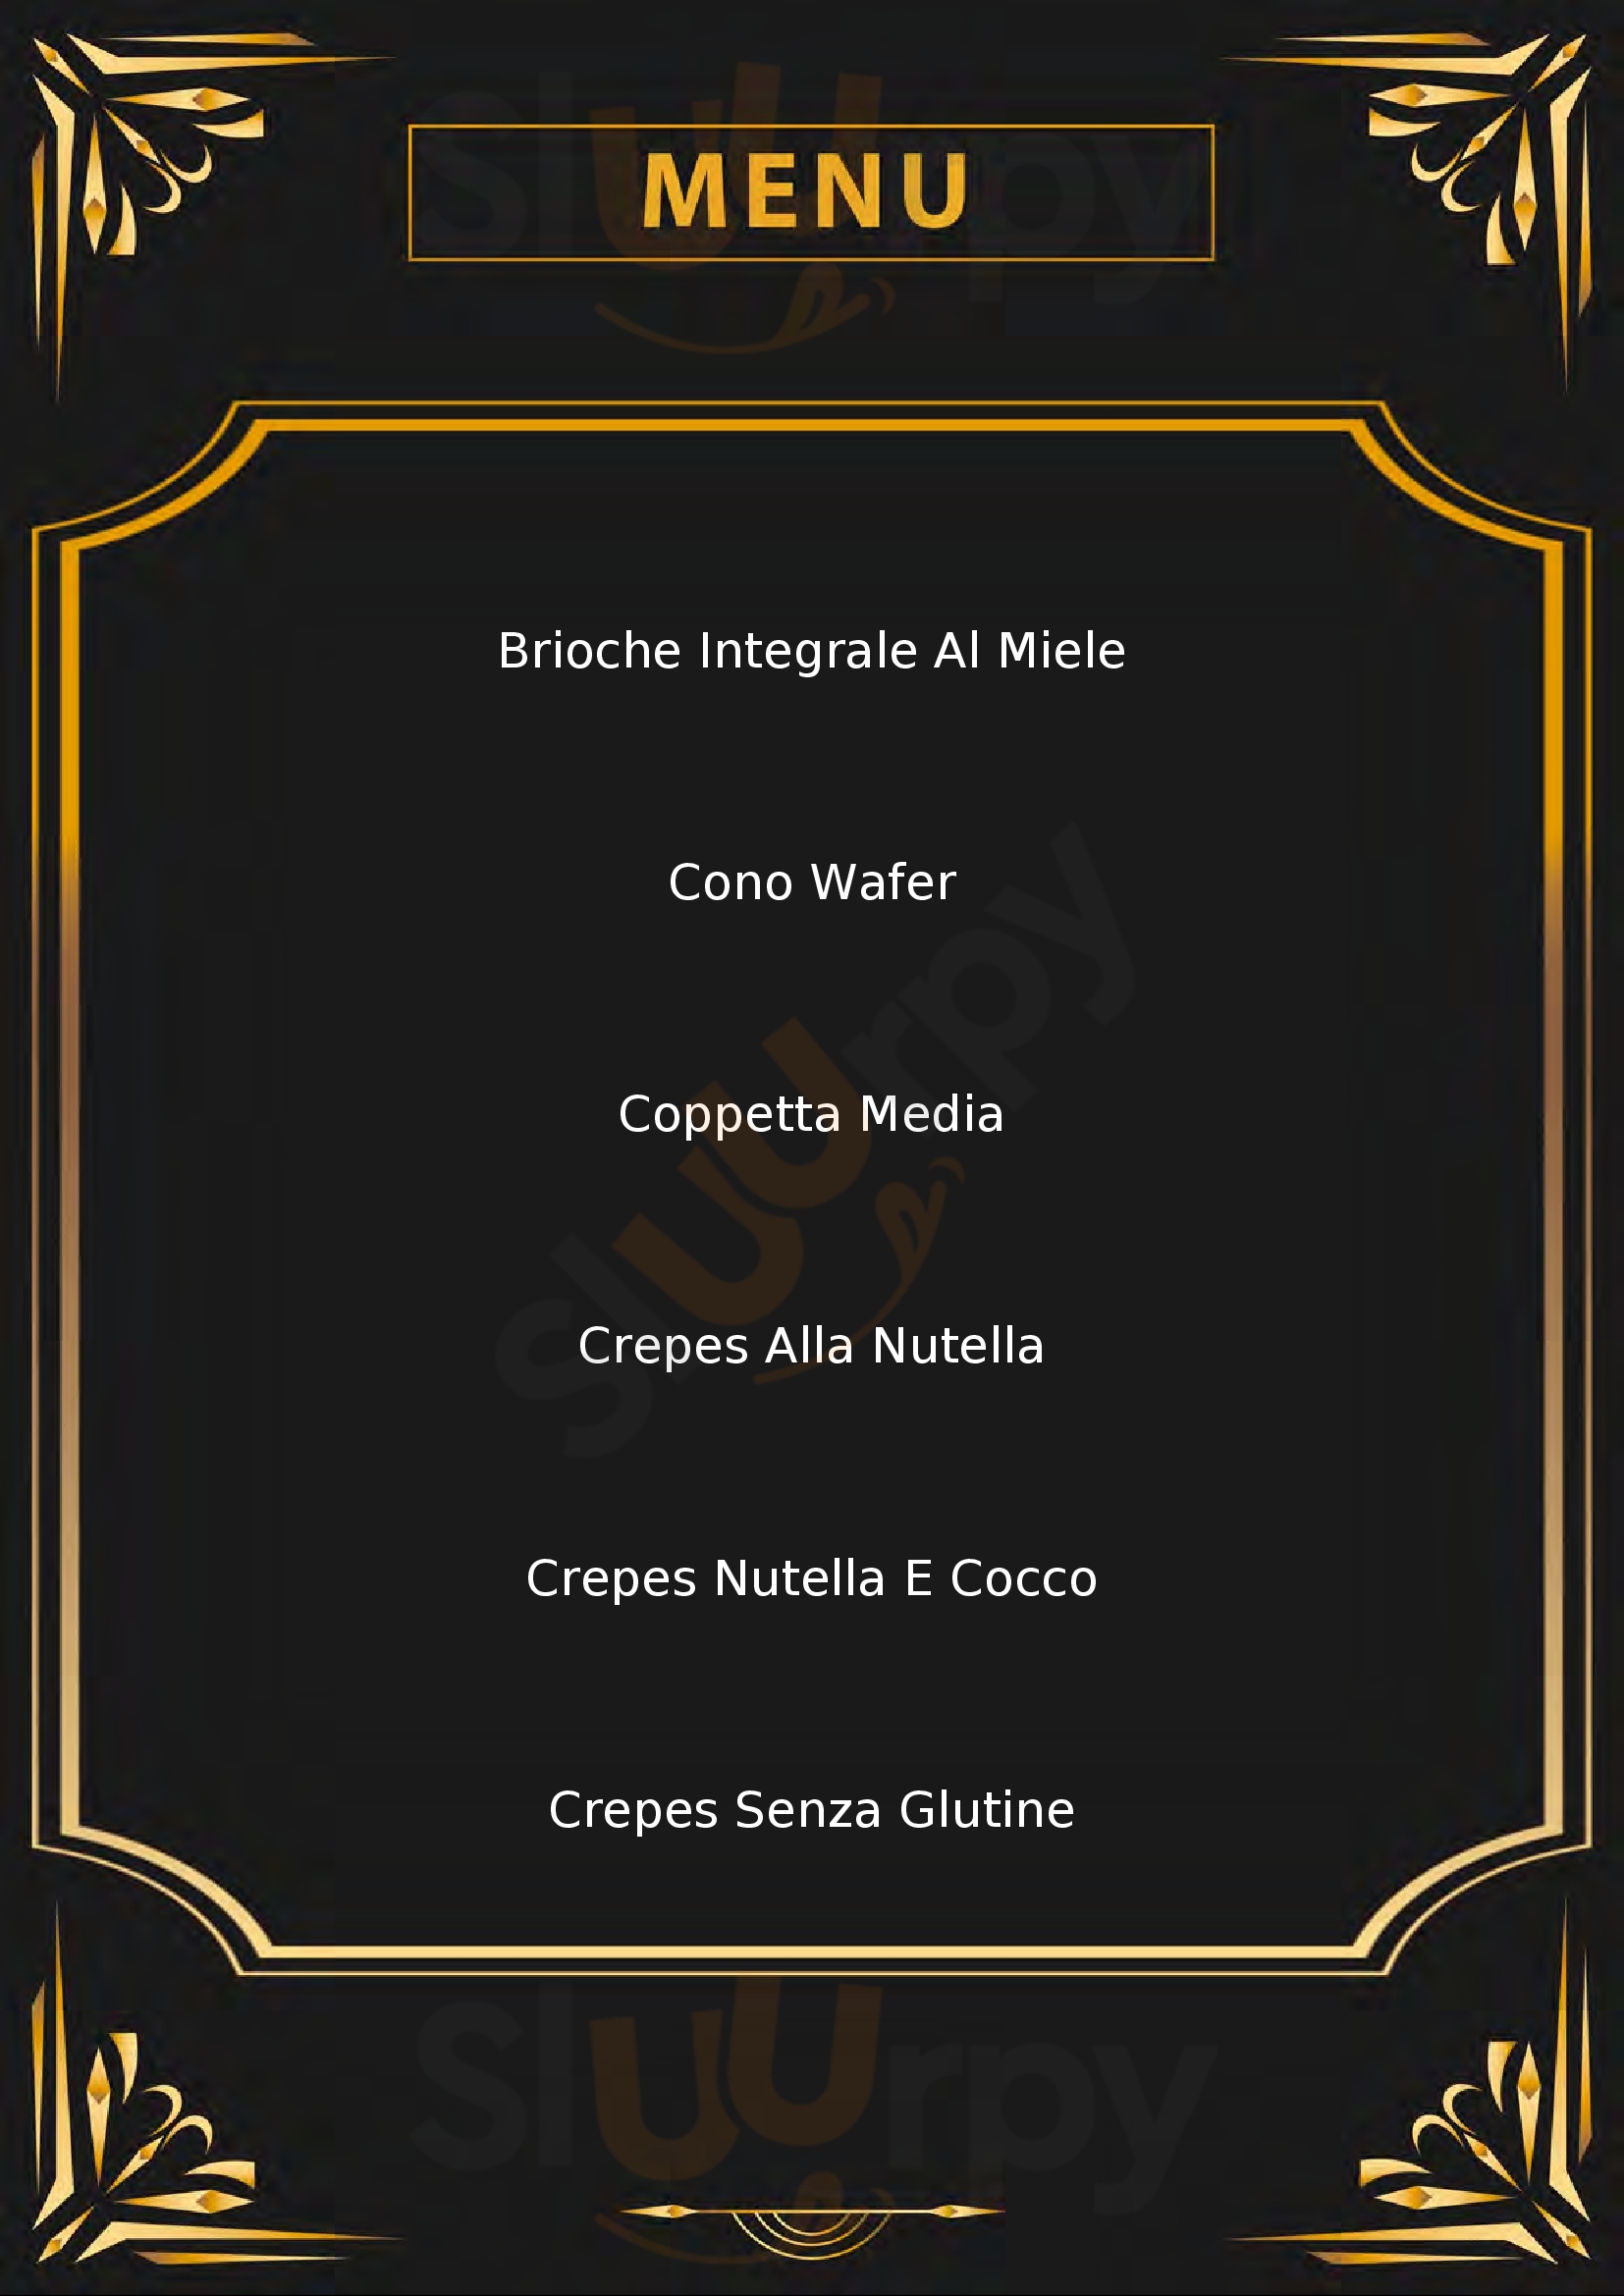 Crema & Cioccolato Monte Compatri menù 1 pagina